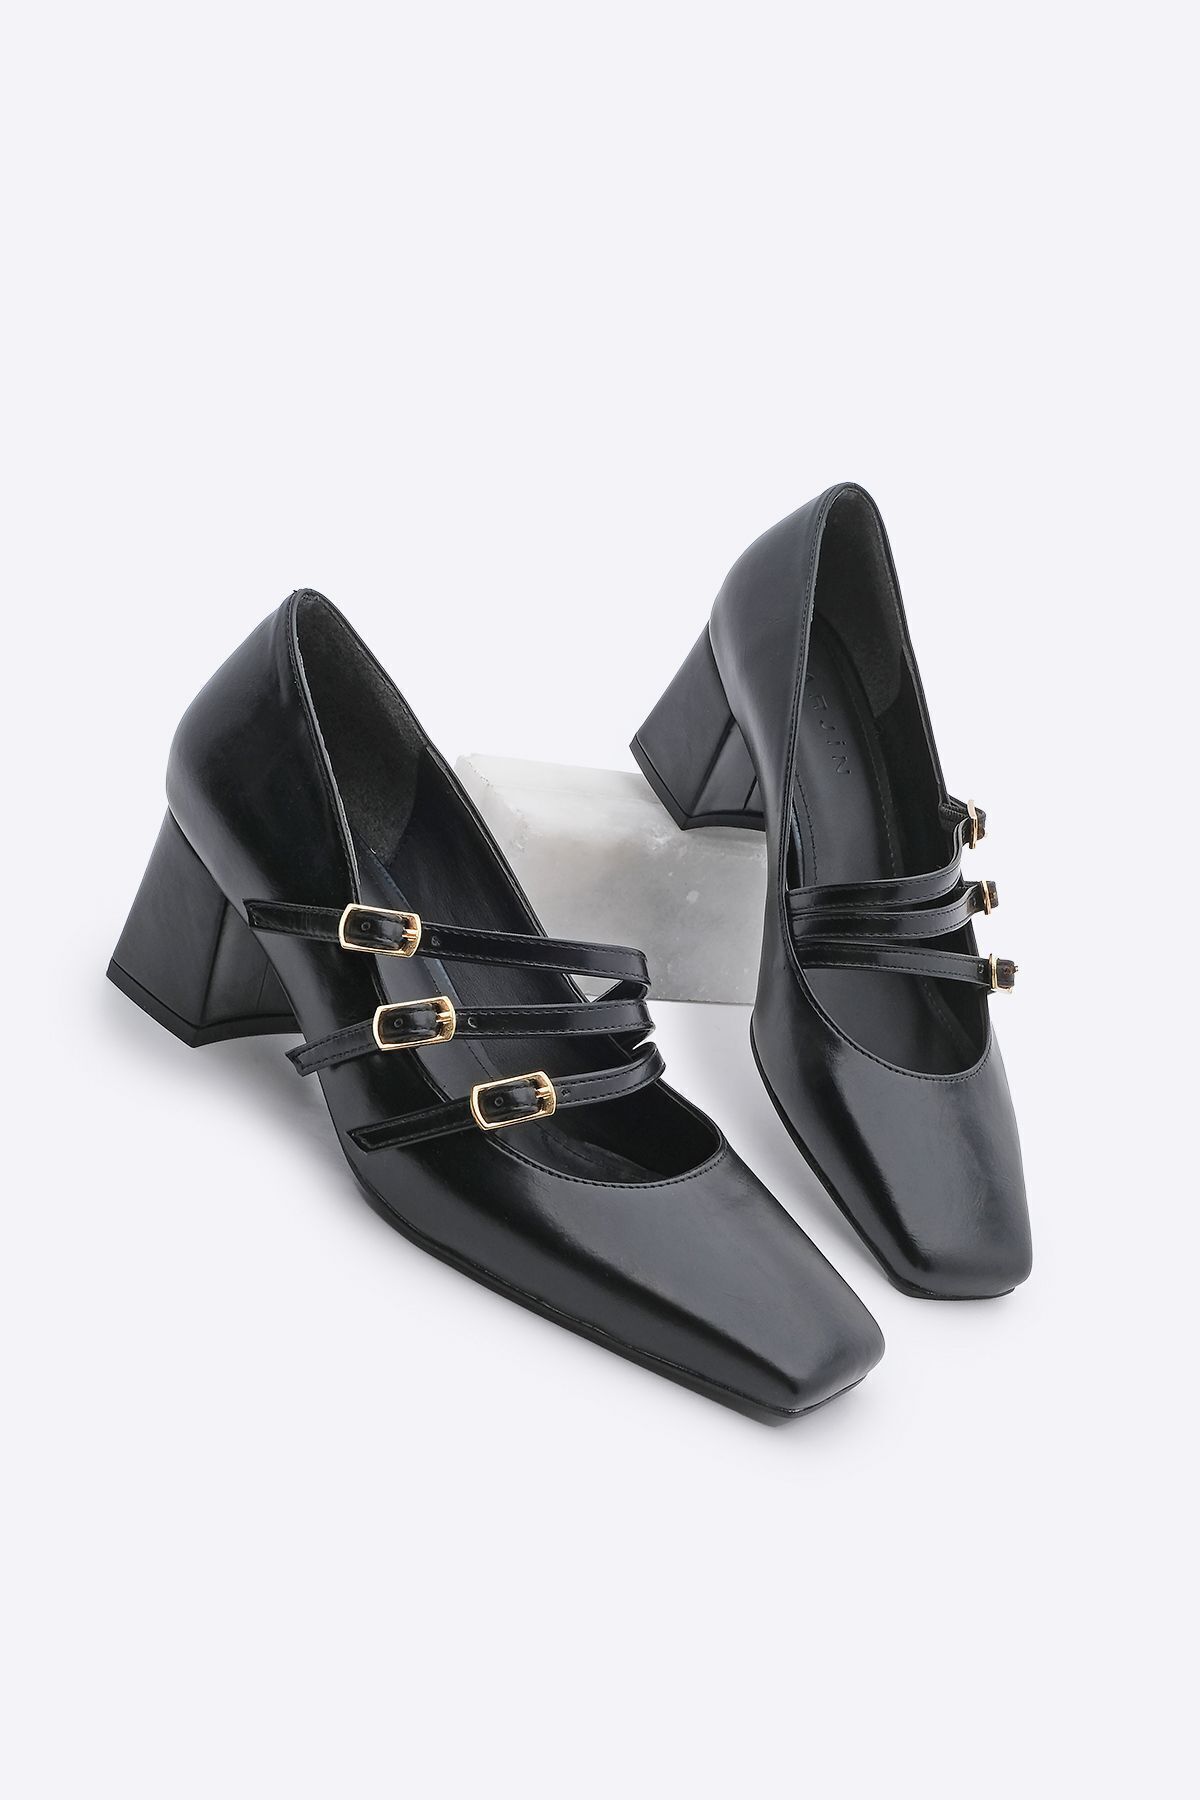 Marjin Kadın Küt Burunlu Bantlı  Klasik Topuklu Ayakkabı Roska Siyah